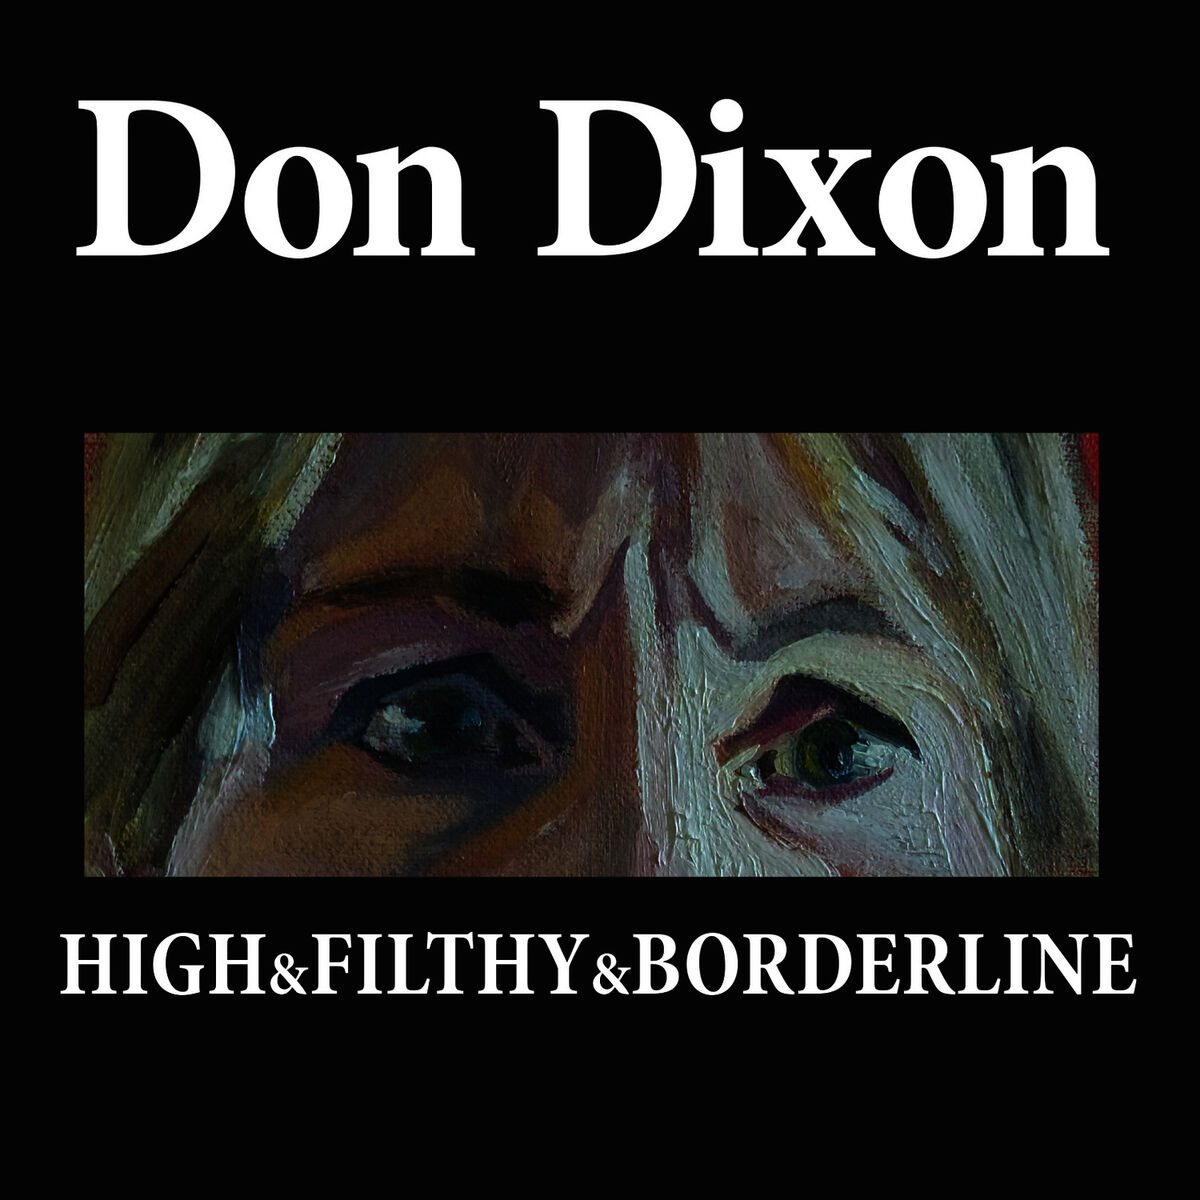 Don Dixon: albums